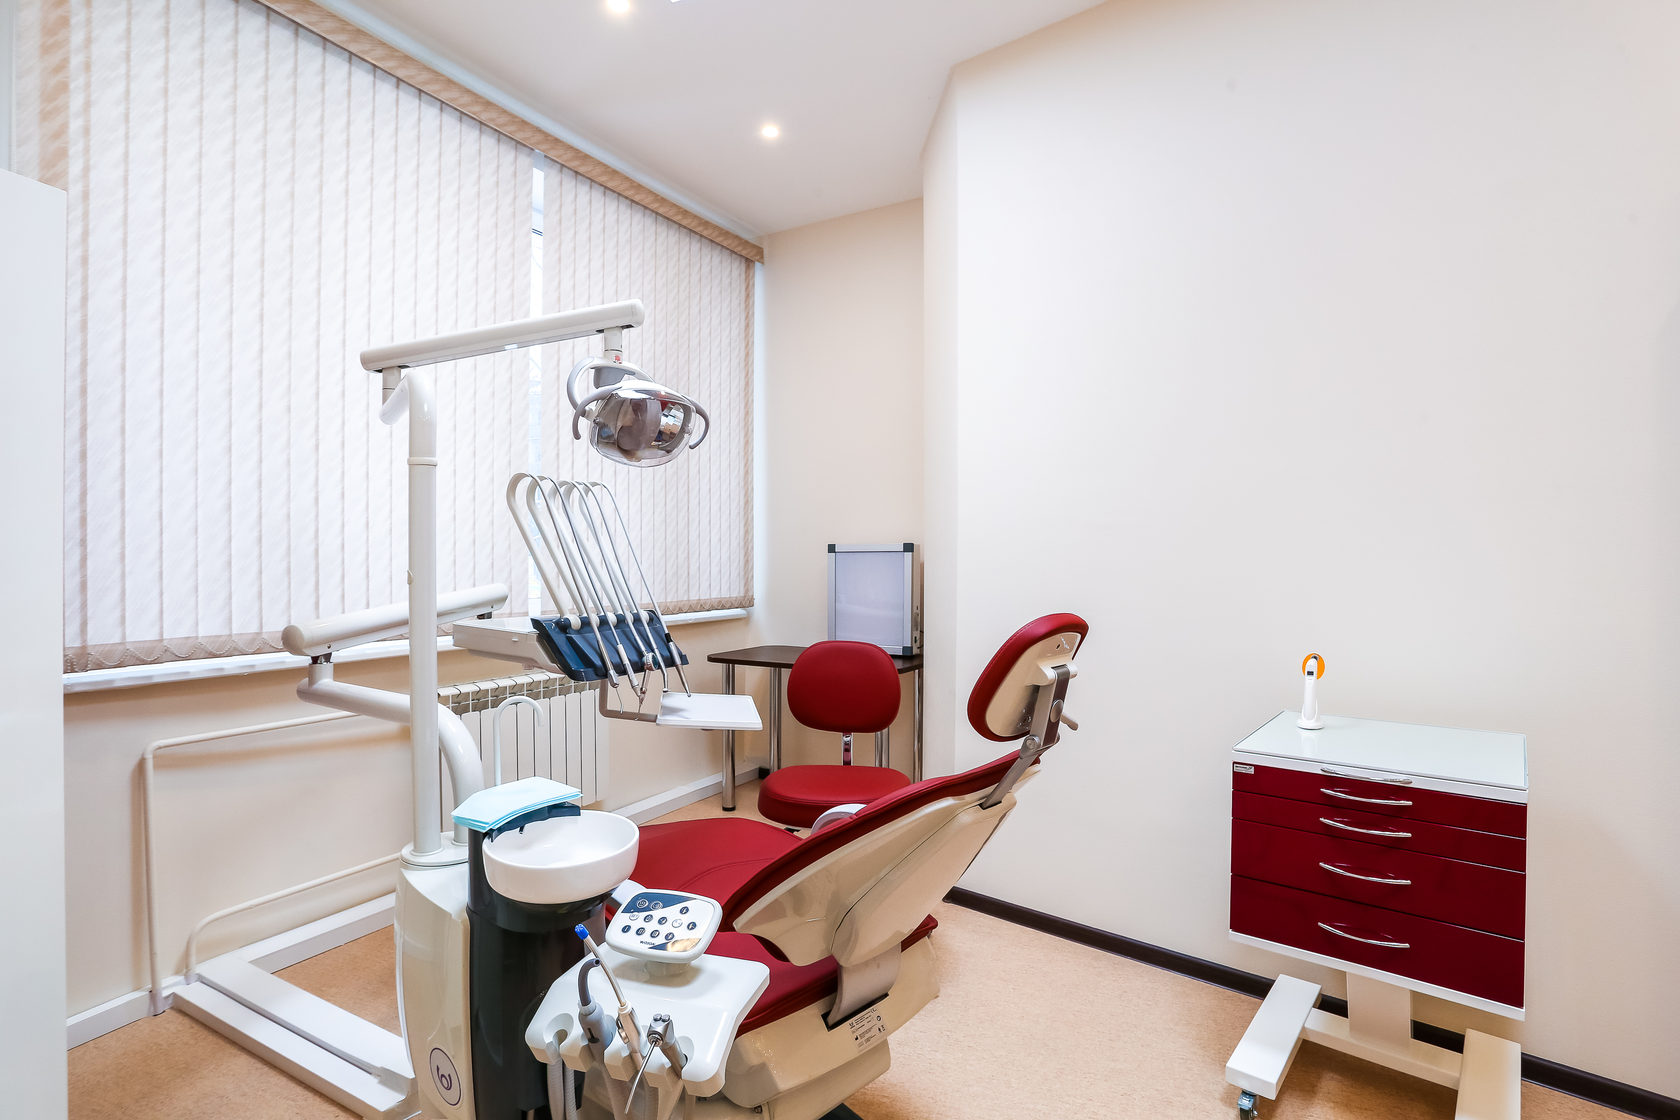 Клиника кунцевская. Самый красивый стоматологический кабинет. Стомвилль. Стоматологическая поликлиника Кунцево. Самый лучший стоматологический кабинет с красивым видом.